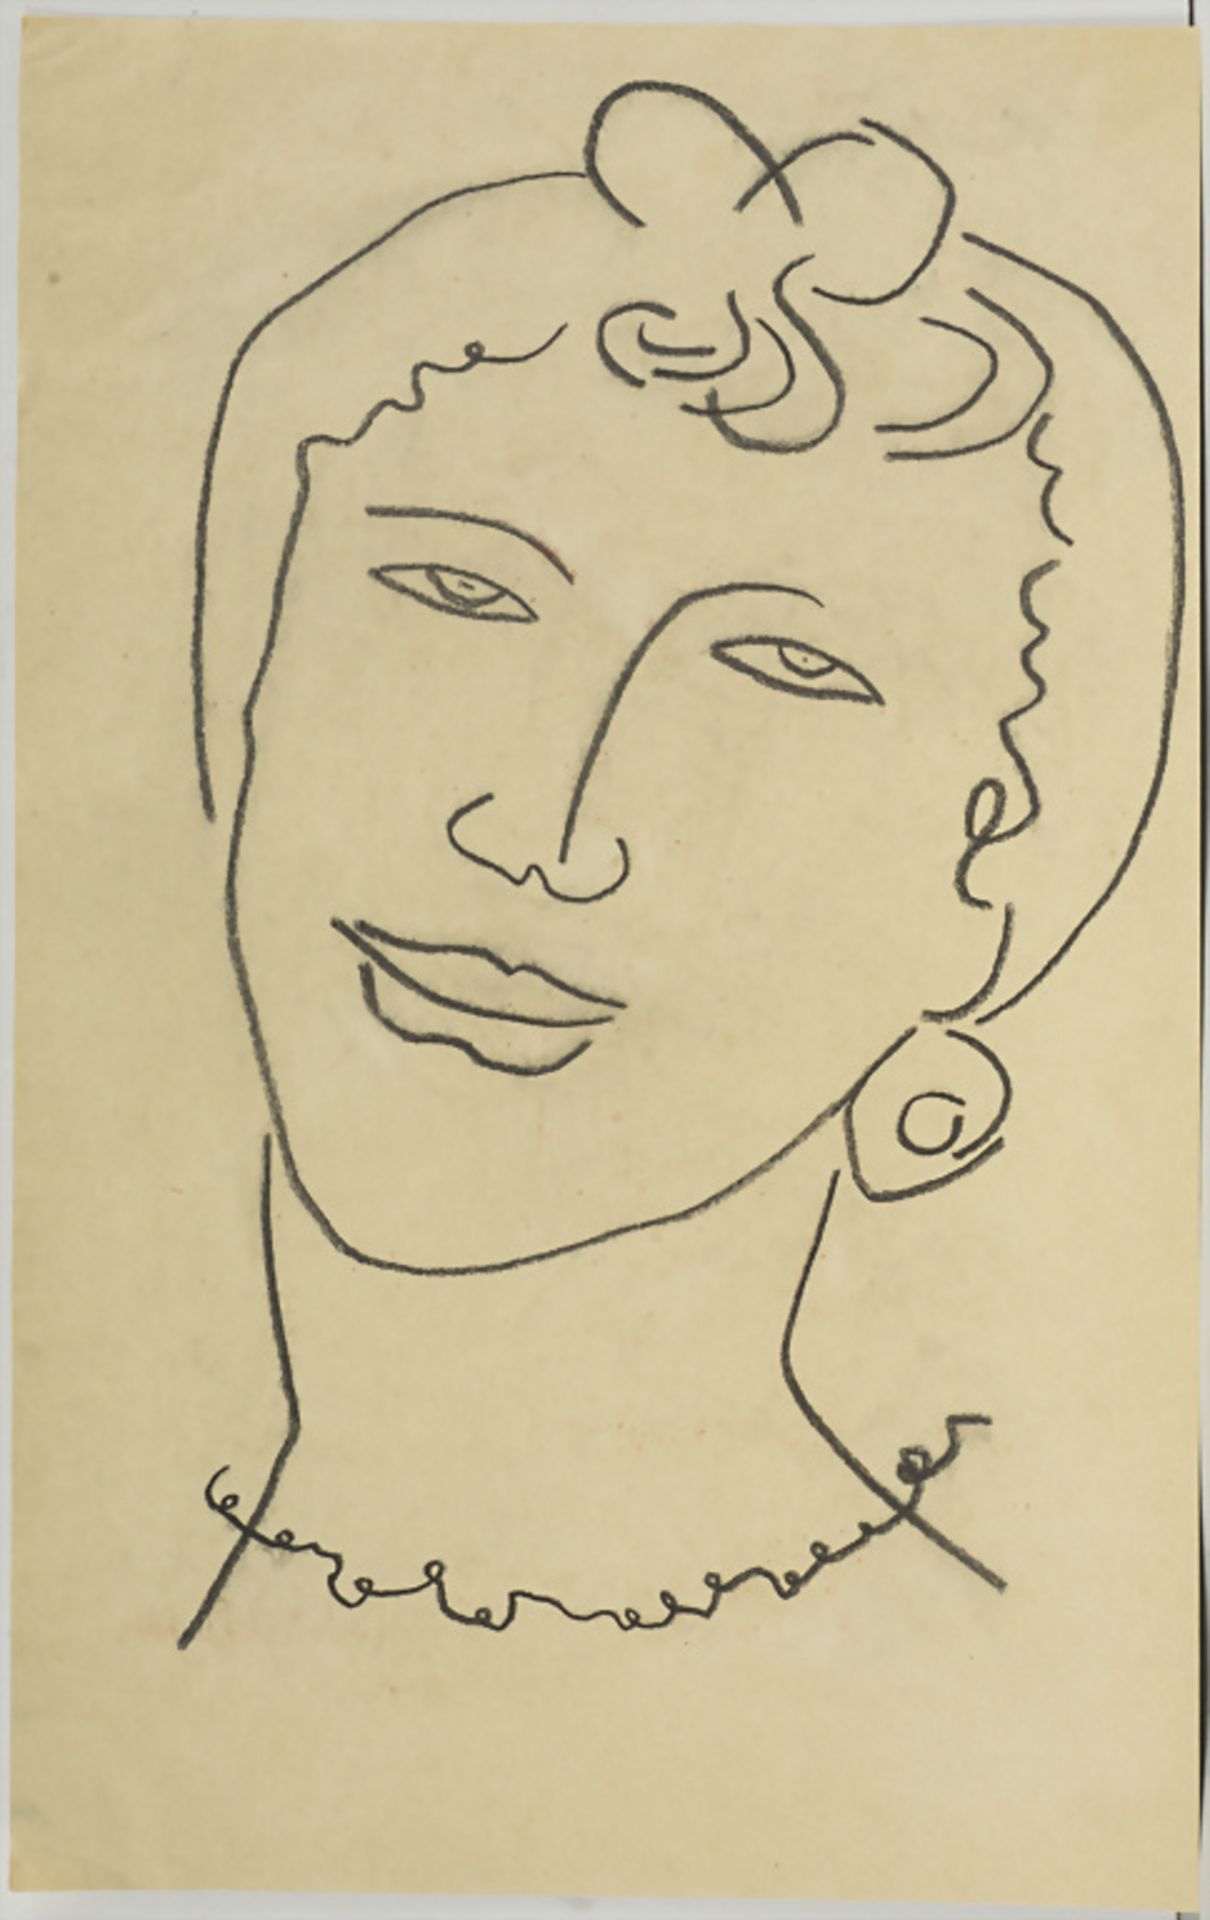 Unbekannter Künstler des 20. Jh., 'Frauenkopf mit Ohrring' / 'A woman's head with earring', 20. Jh.